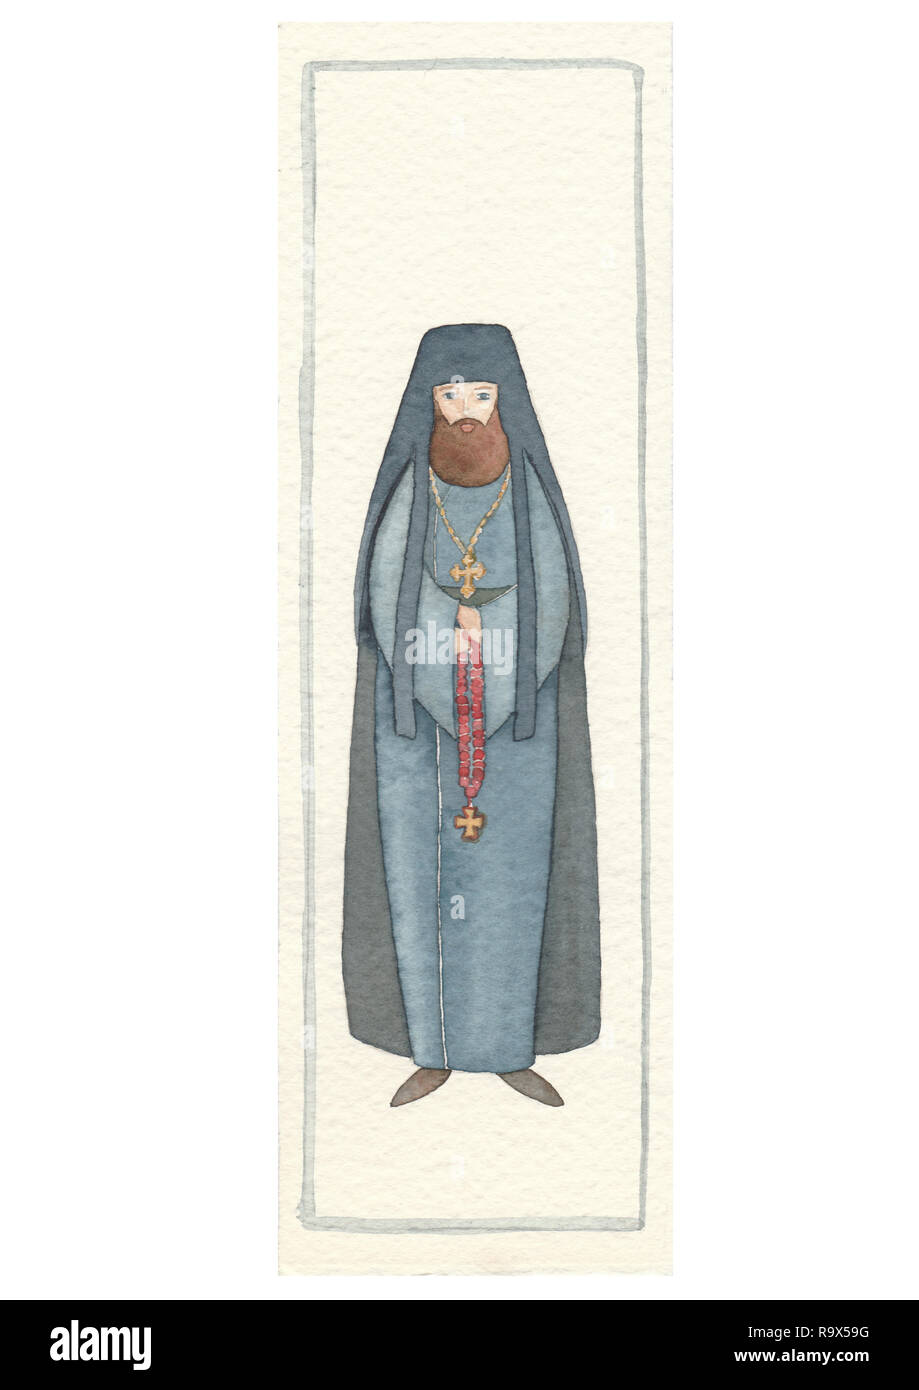 Hand zurück Postkarte mit archimandrit: byzantinische Priester, Aquarell Abbildung gezeichnet Stockfoto